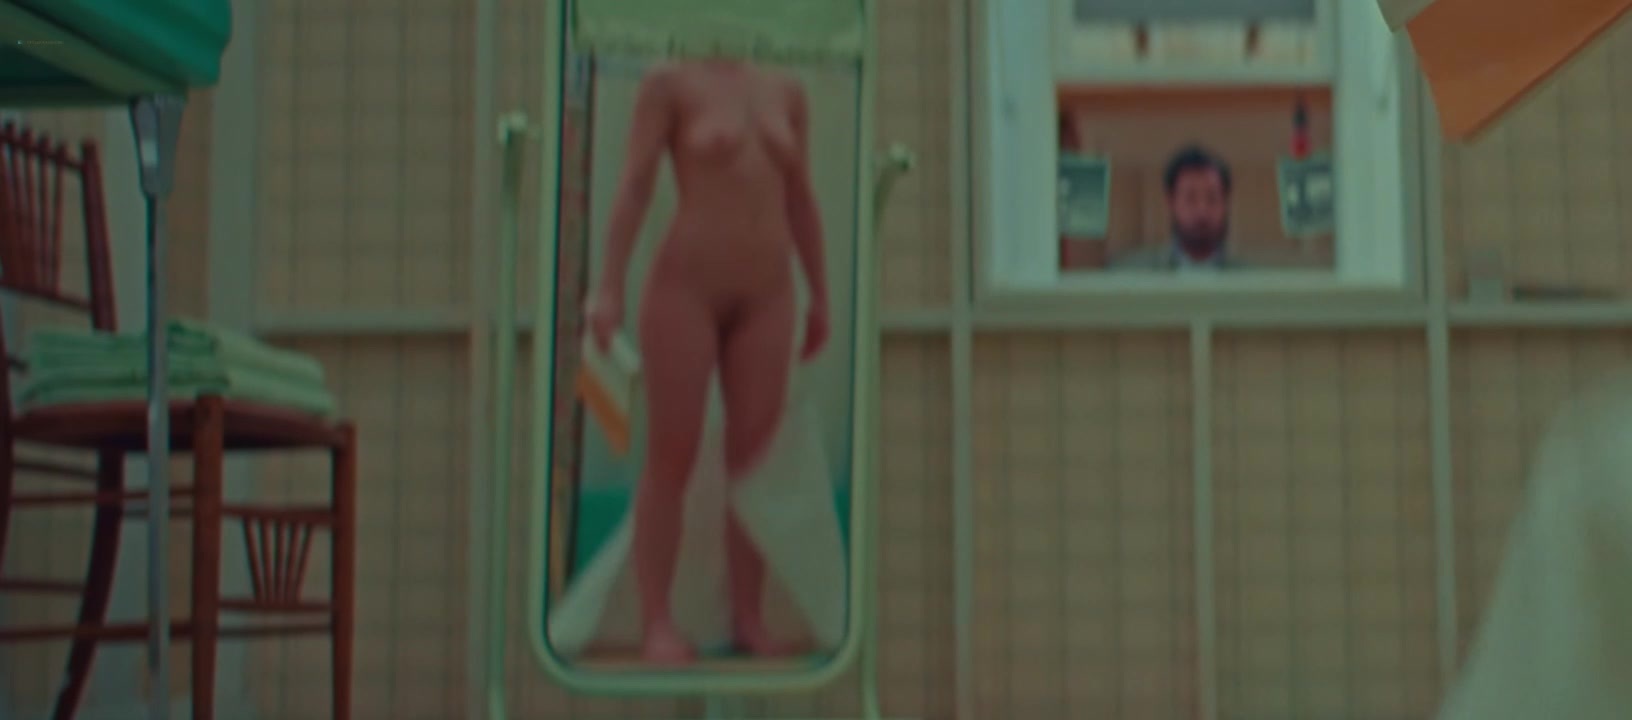 Scarlett johansson hot nuda